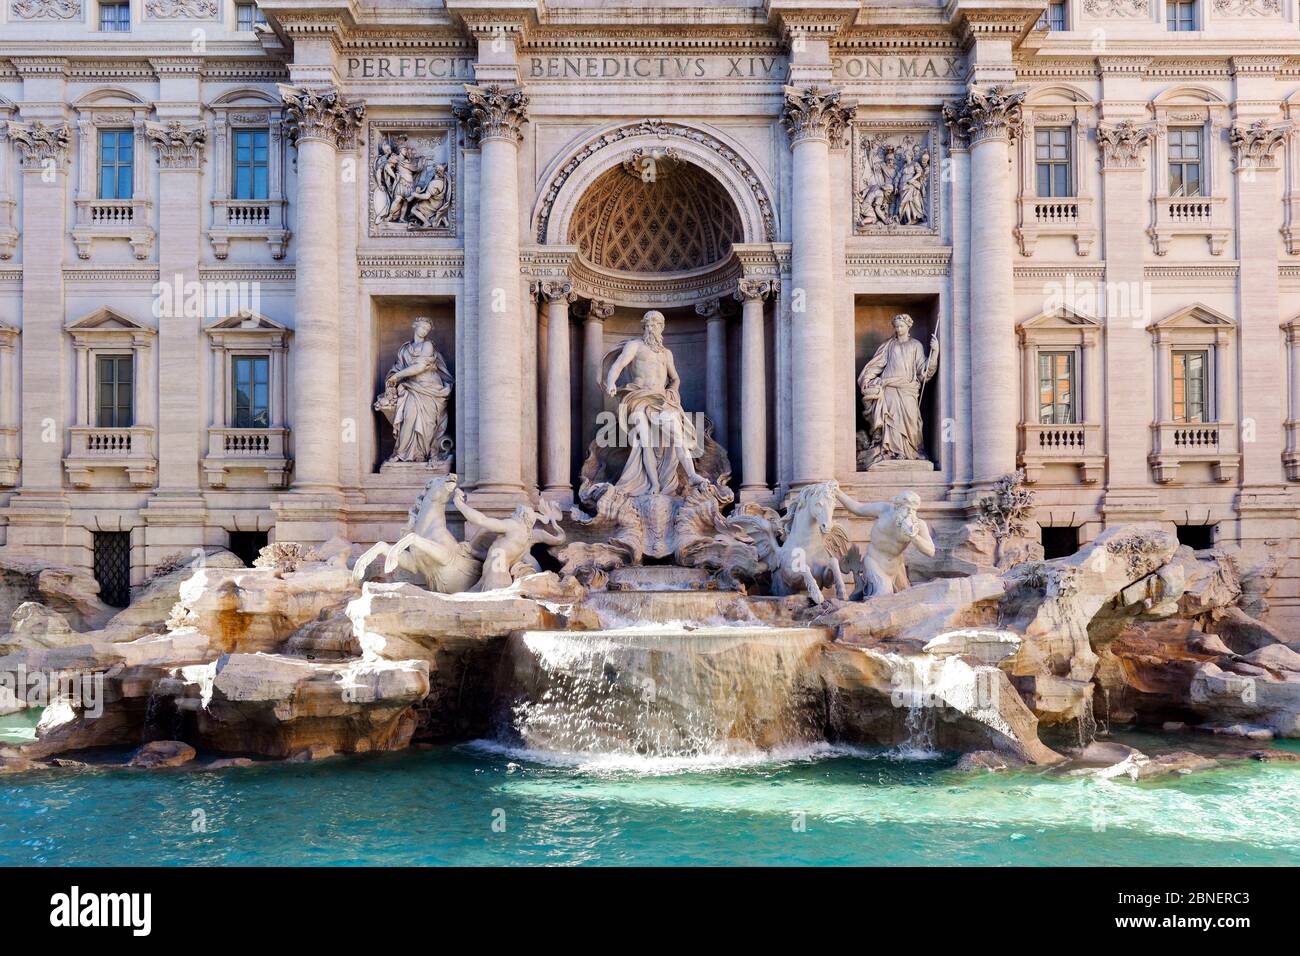 Facade of the Trevi Fountain. Rome, Italy, Europe, EU. Stock Photo